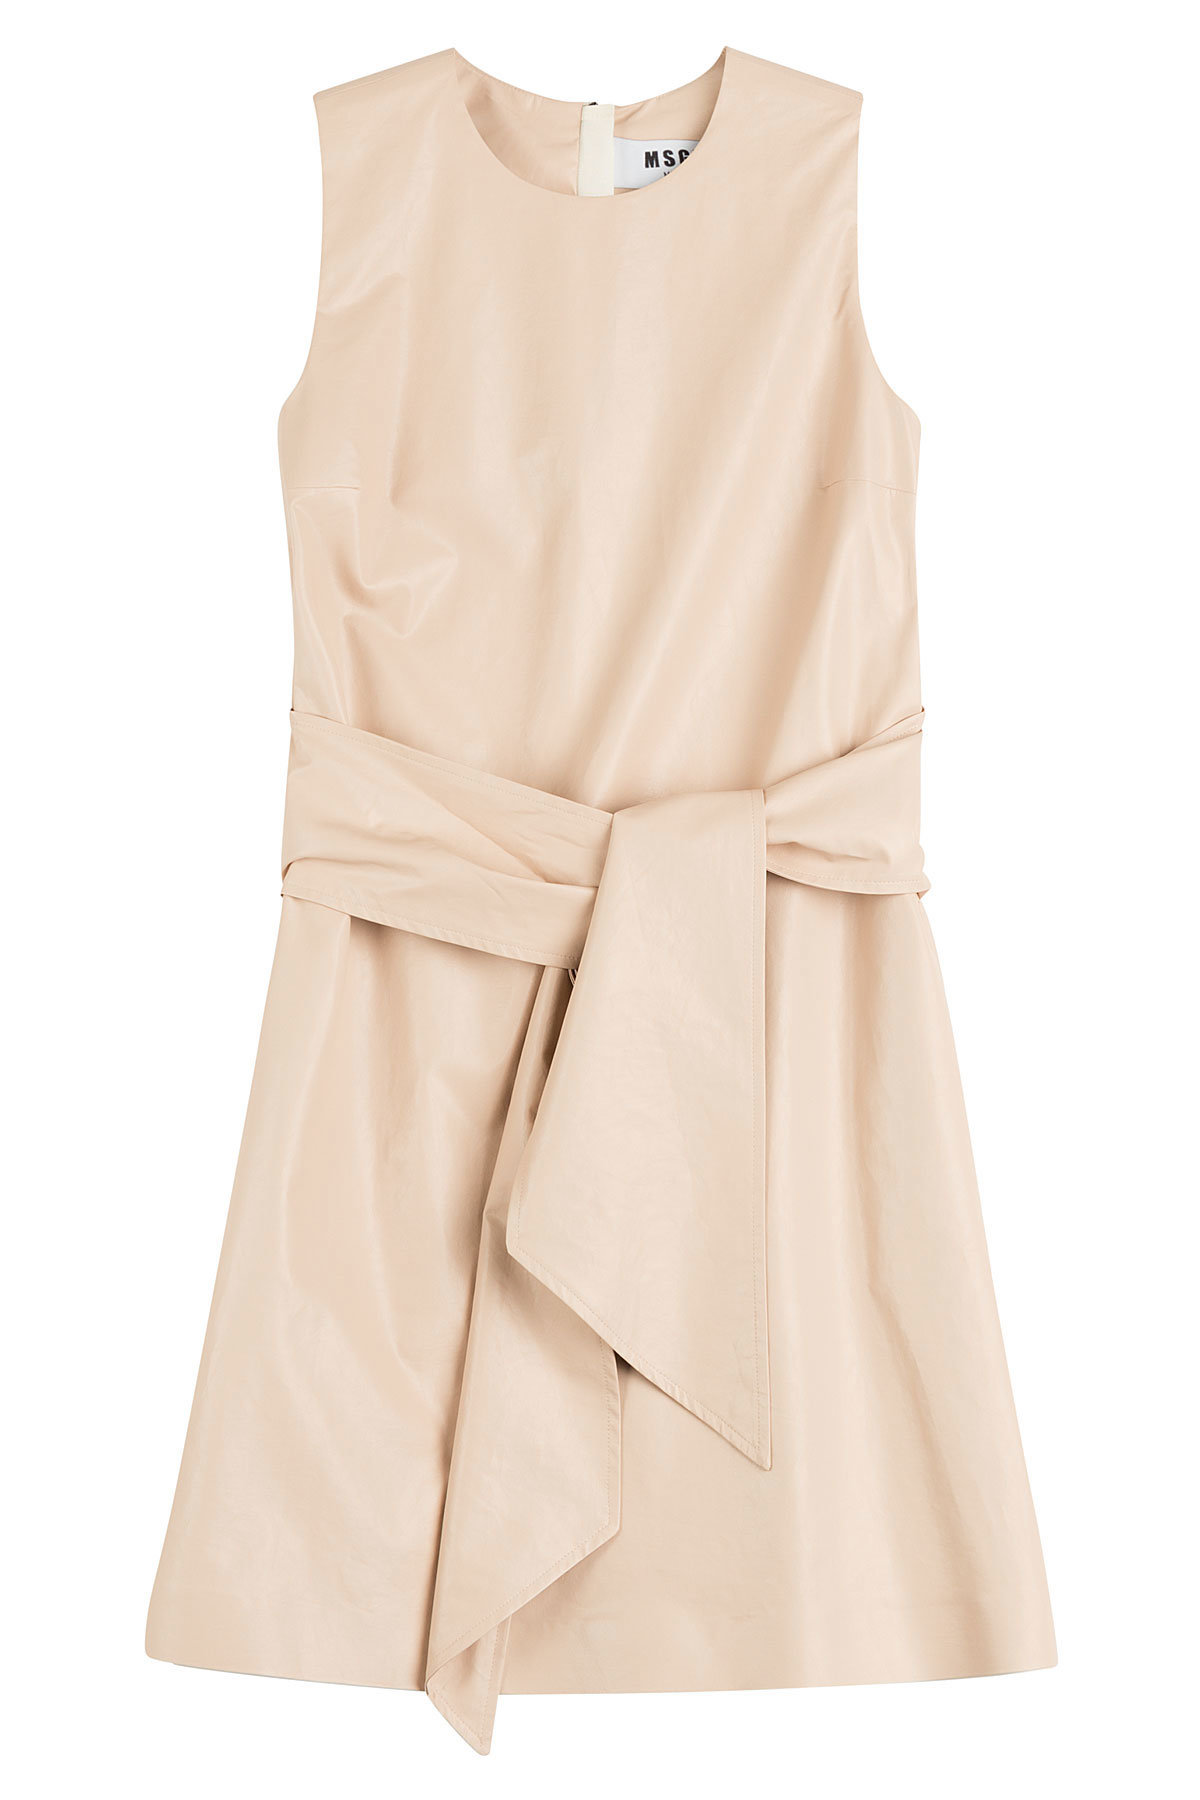 MSGM - Cotton-Blend Tie-Front Dress